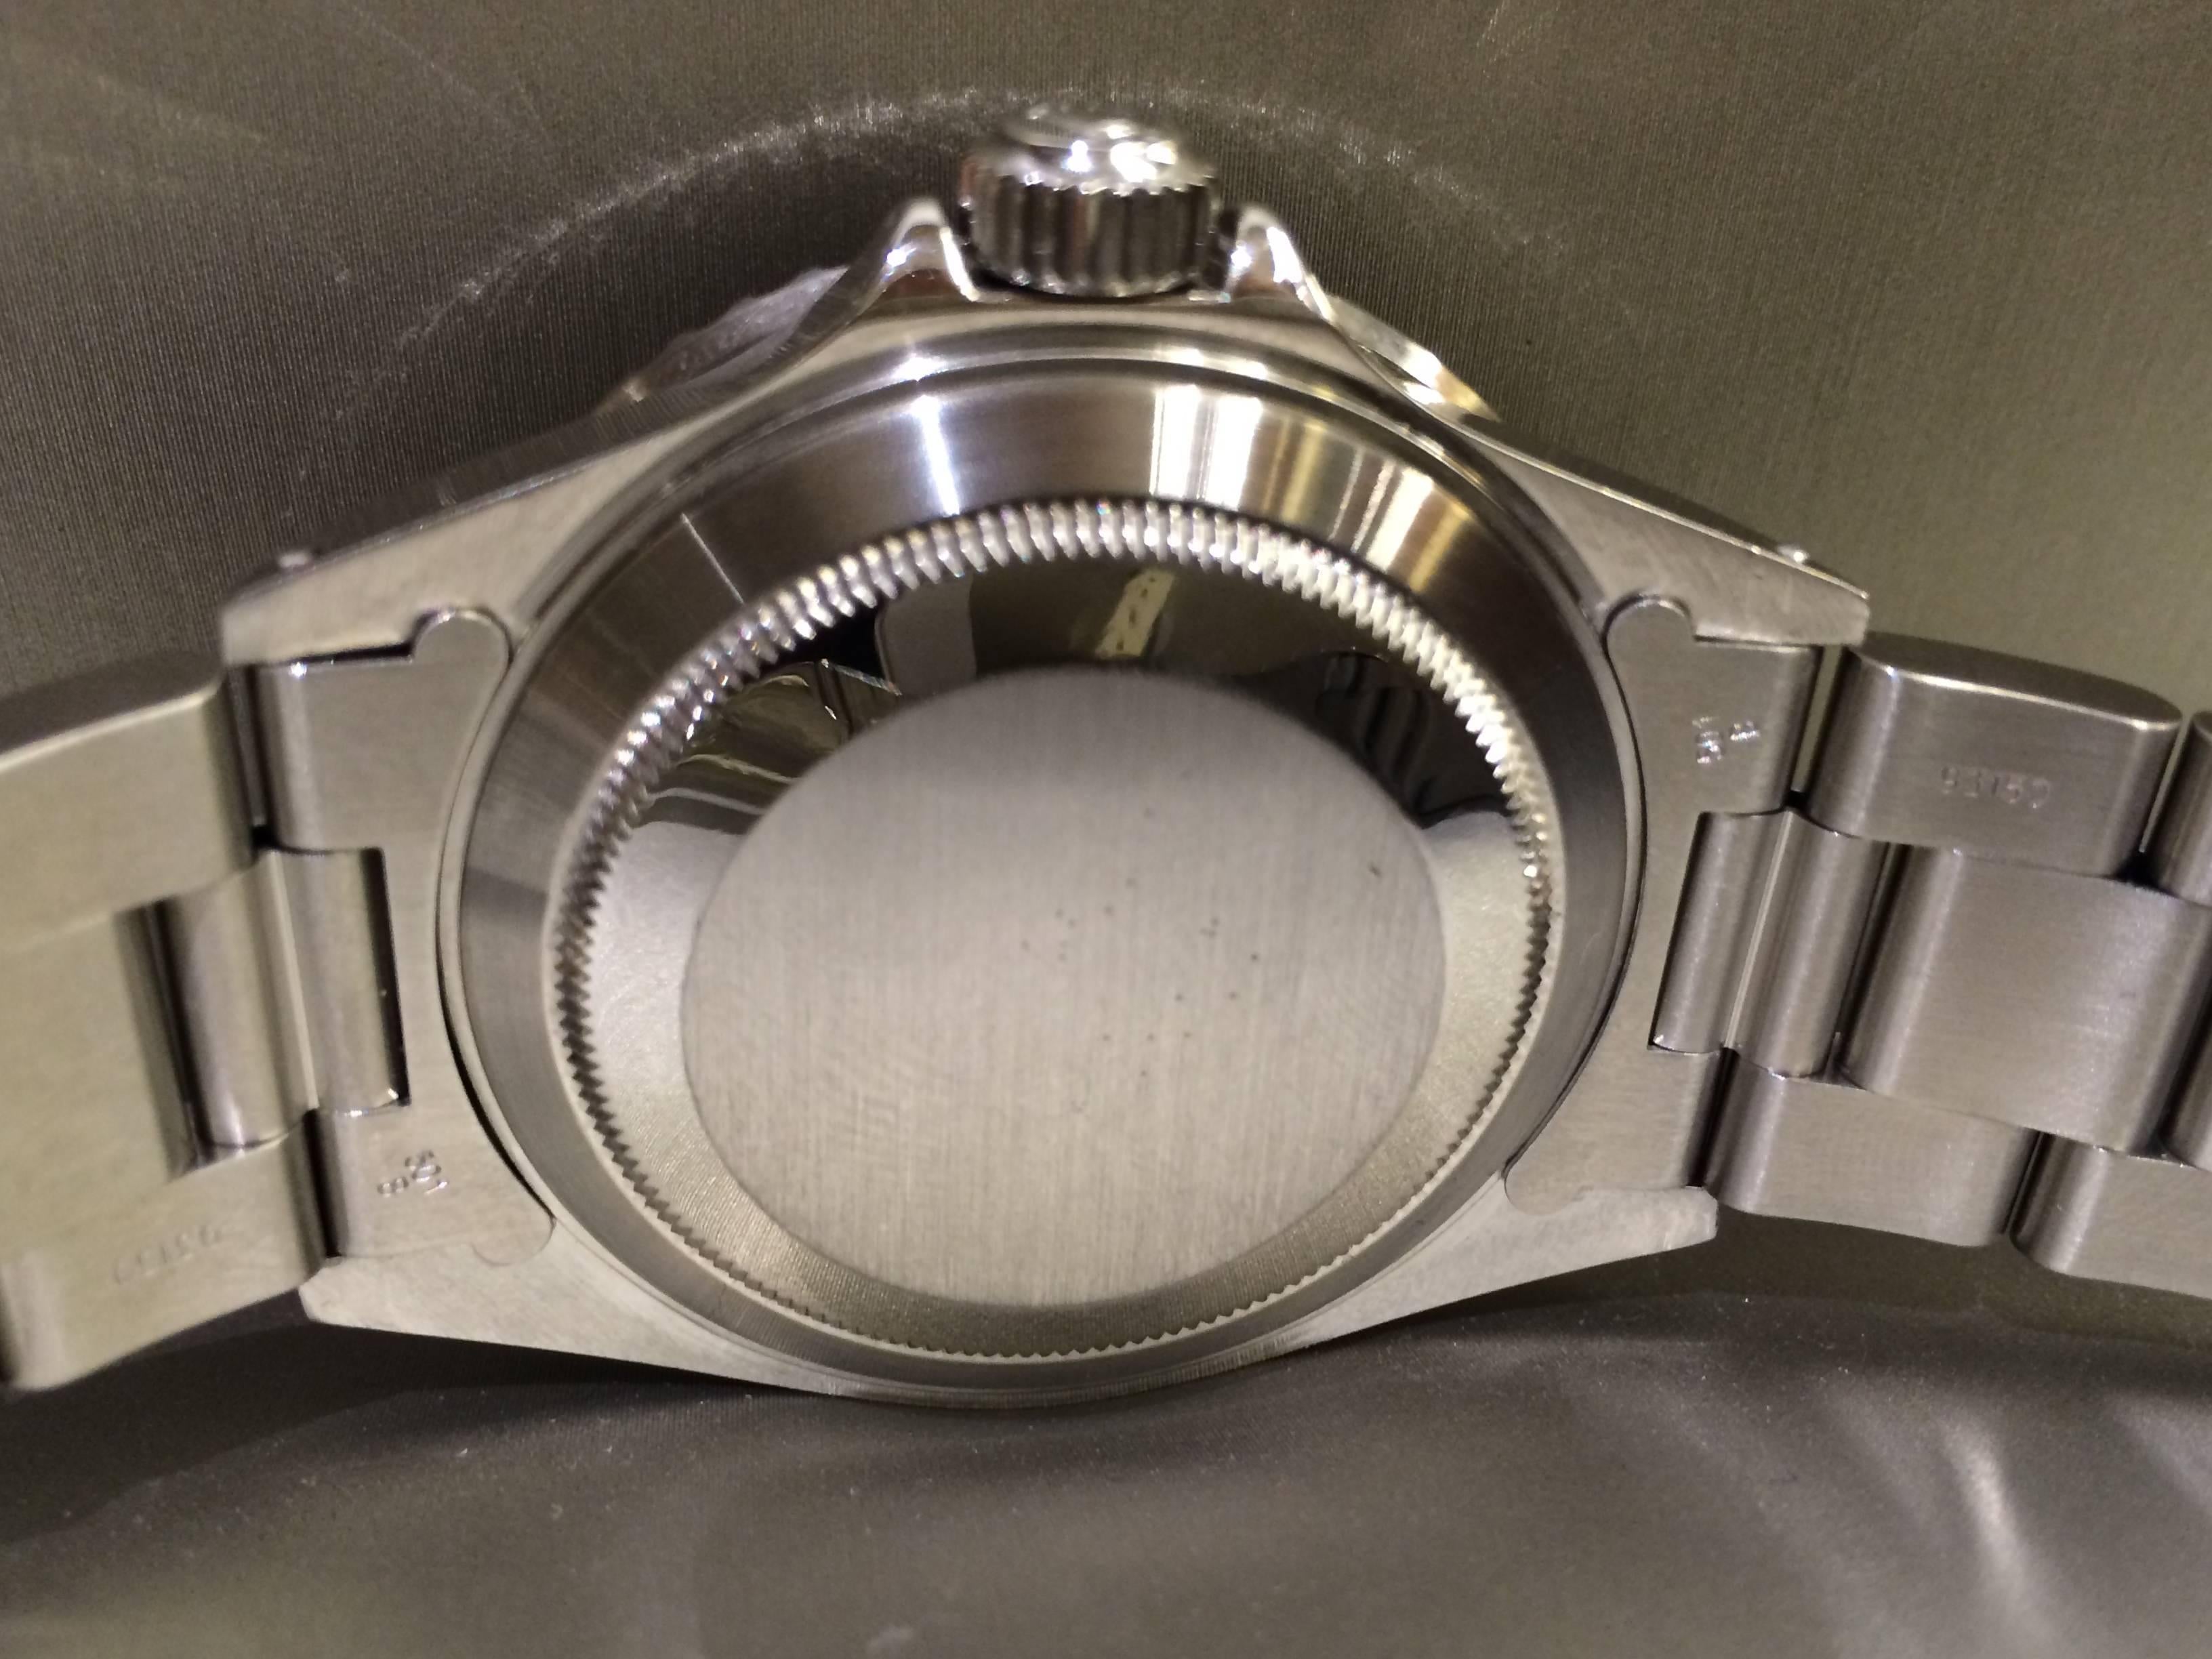 Rolex Stainless Steel Submariner Date Wristwatch Ref 11610 4